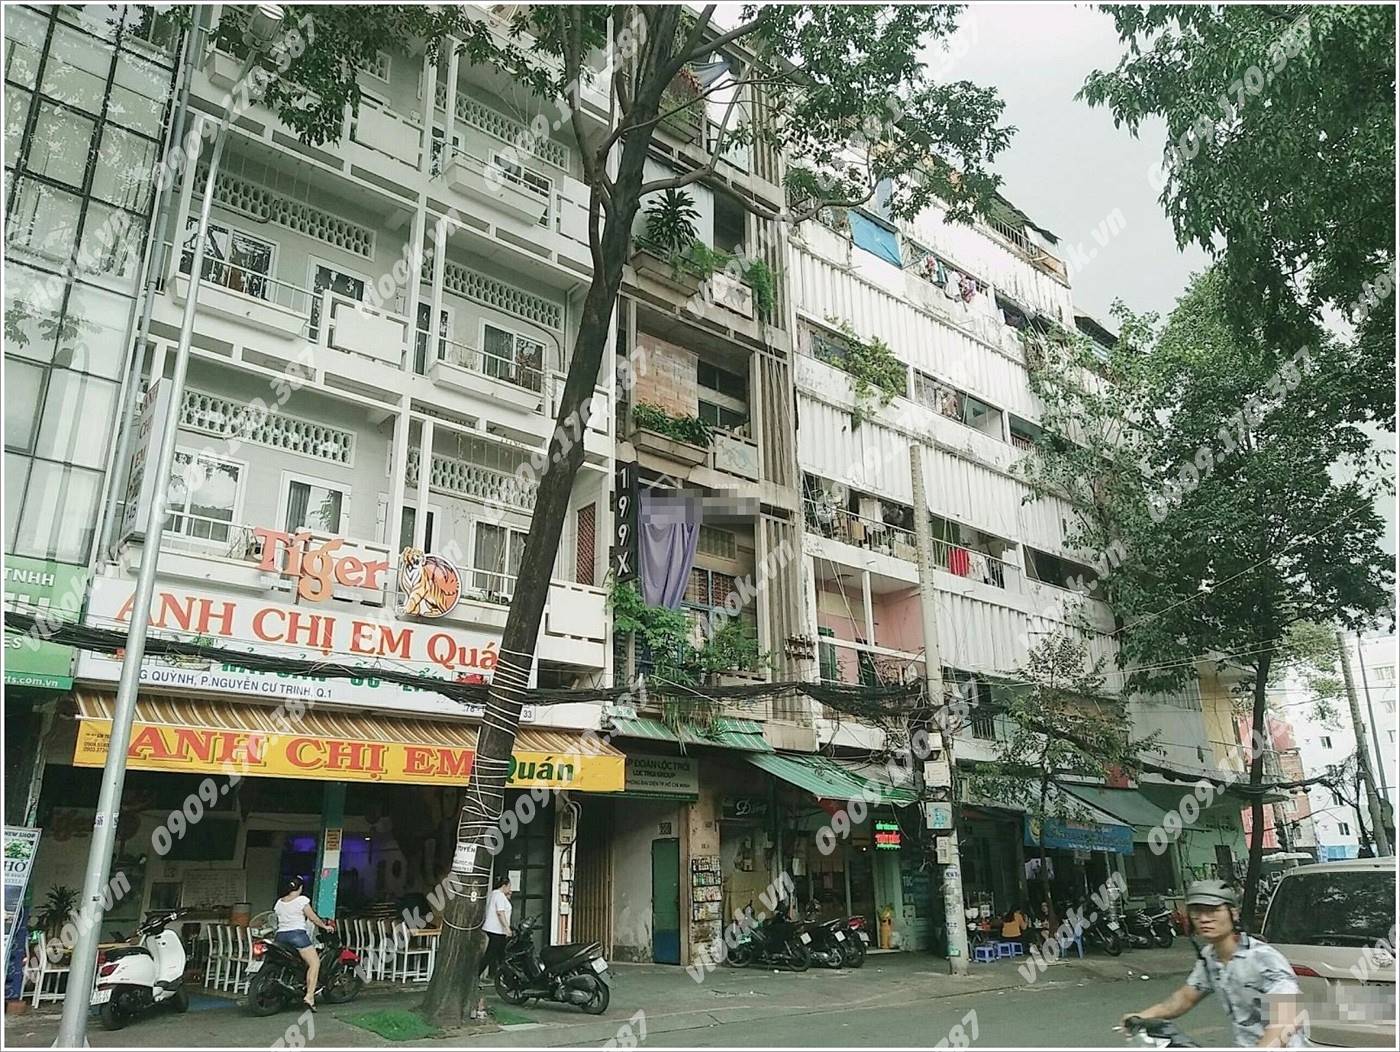 Cao ốc văn phòng cho thuê Tòa nhà 14B-C Cống Quỳnh, Quận 1, TPHCM - vlook.vn